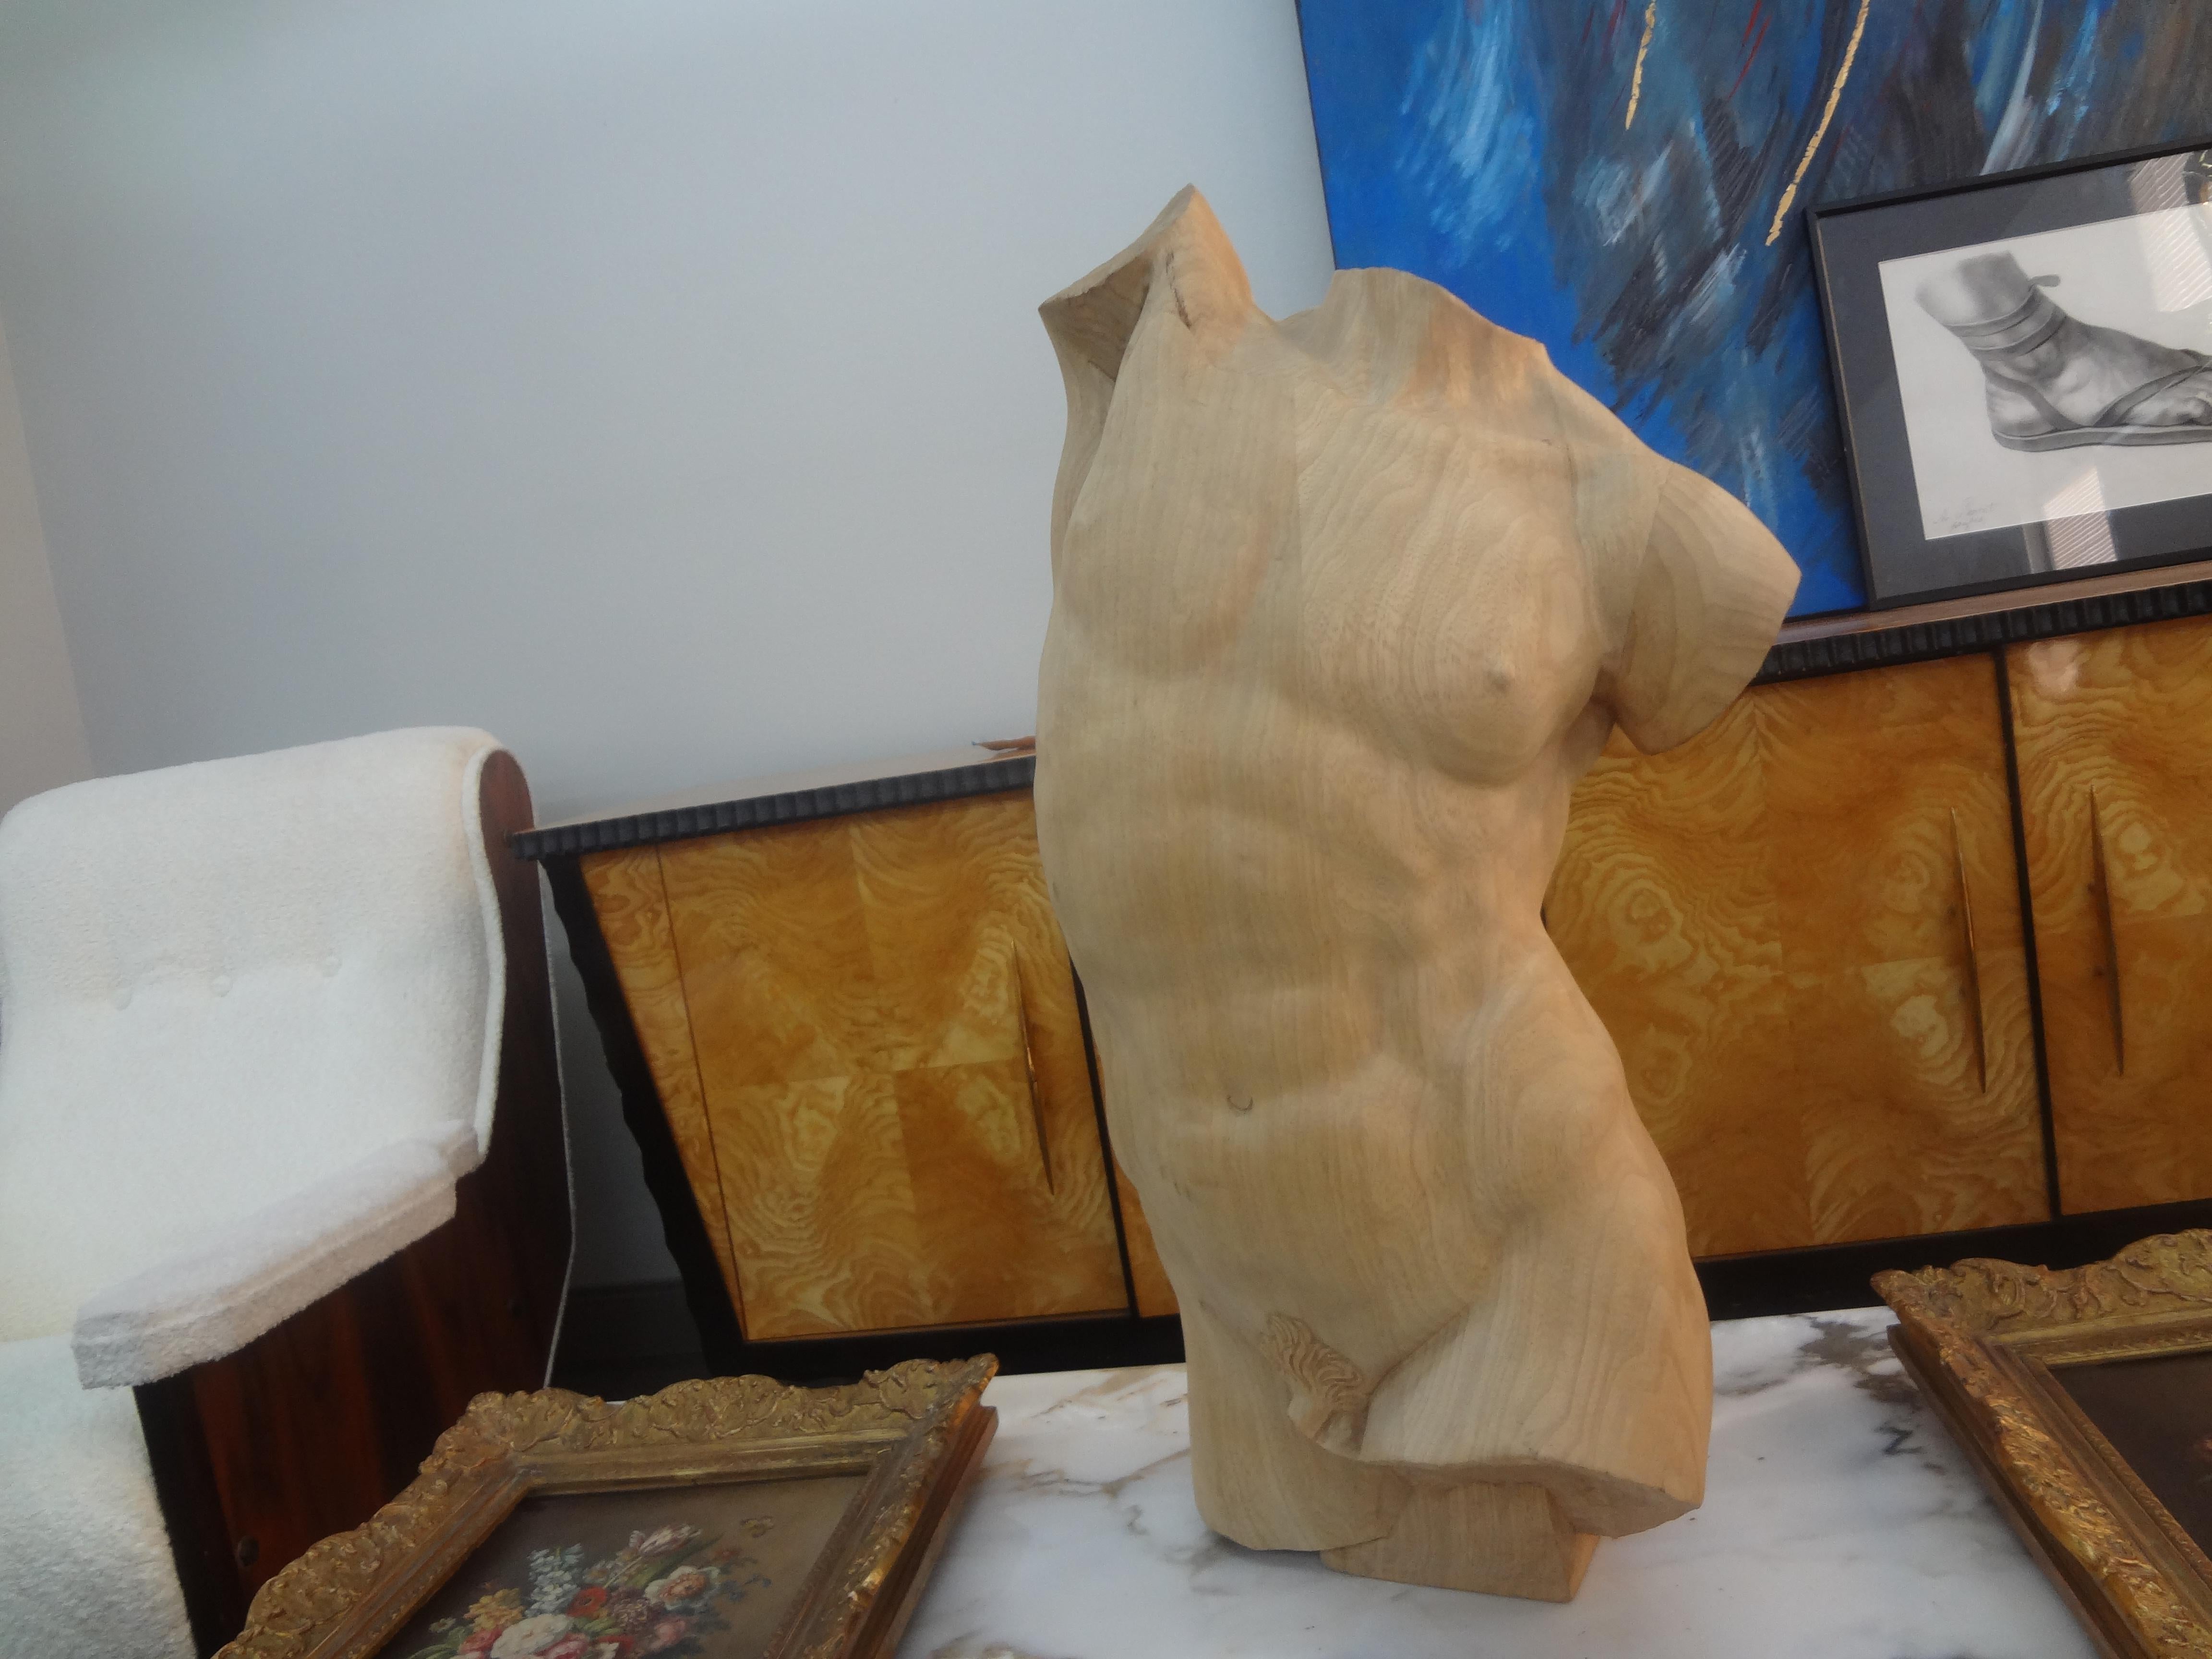 Torse d'homme en bois sculpté de style italien moderne.
Cette belle et grande sculpture italienne de torse d'homme est sculptée à la main de manière experte en bois fruitier et serait parfaite sur un piédestal ou sur une table de console ou une